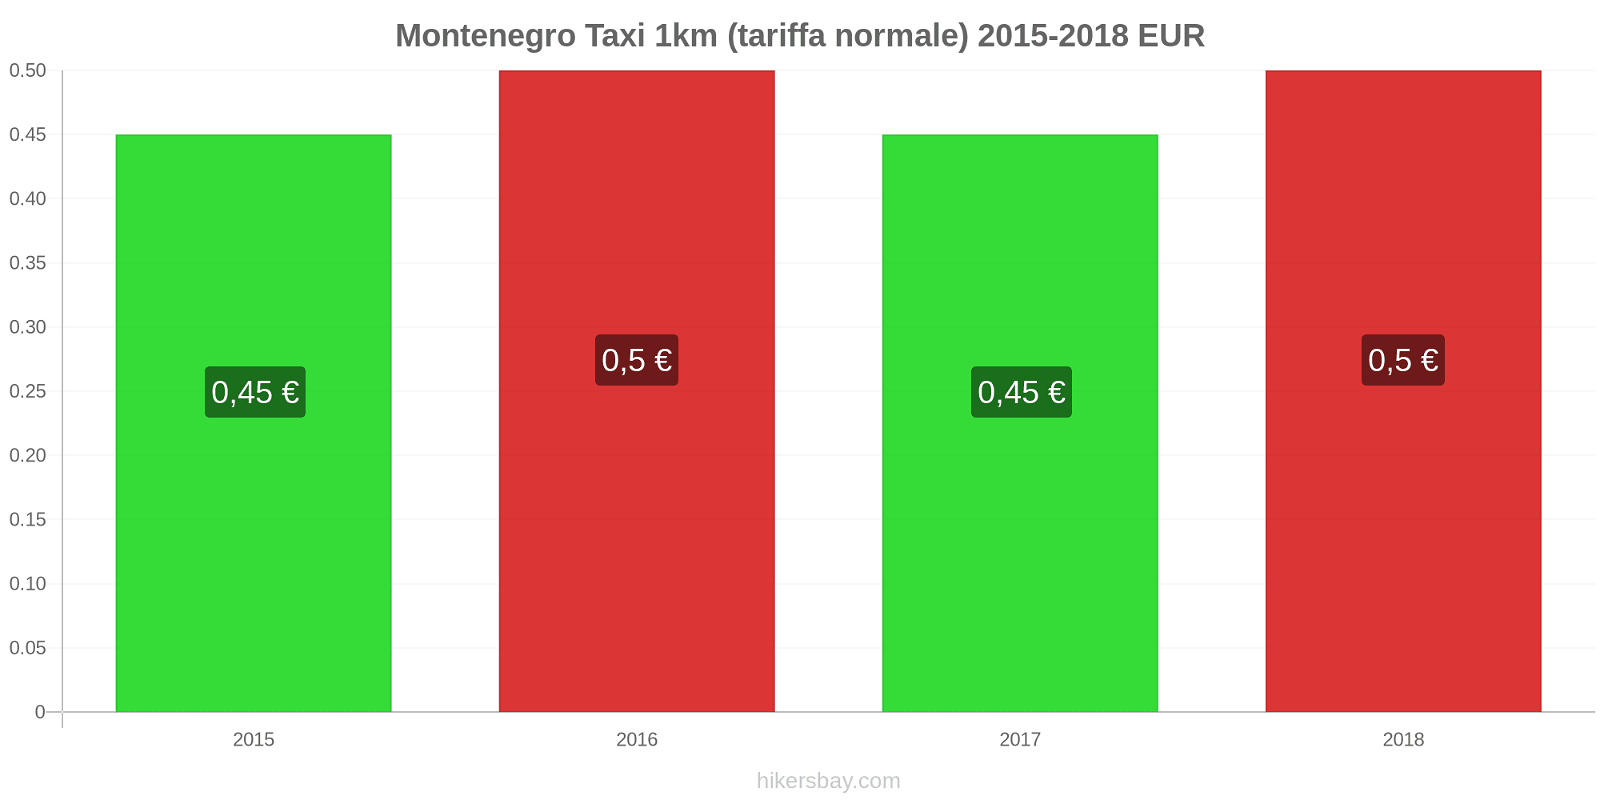 Montenegro cambi di prezzo Taxi 1km (tariffa normale) hikersbay.com